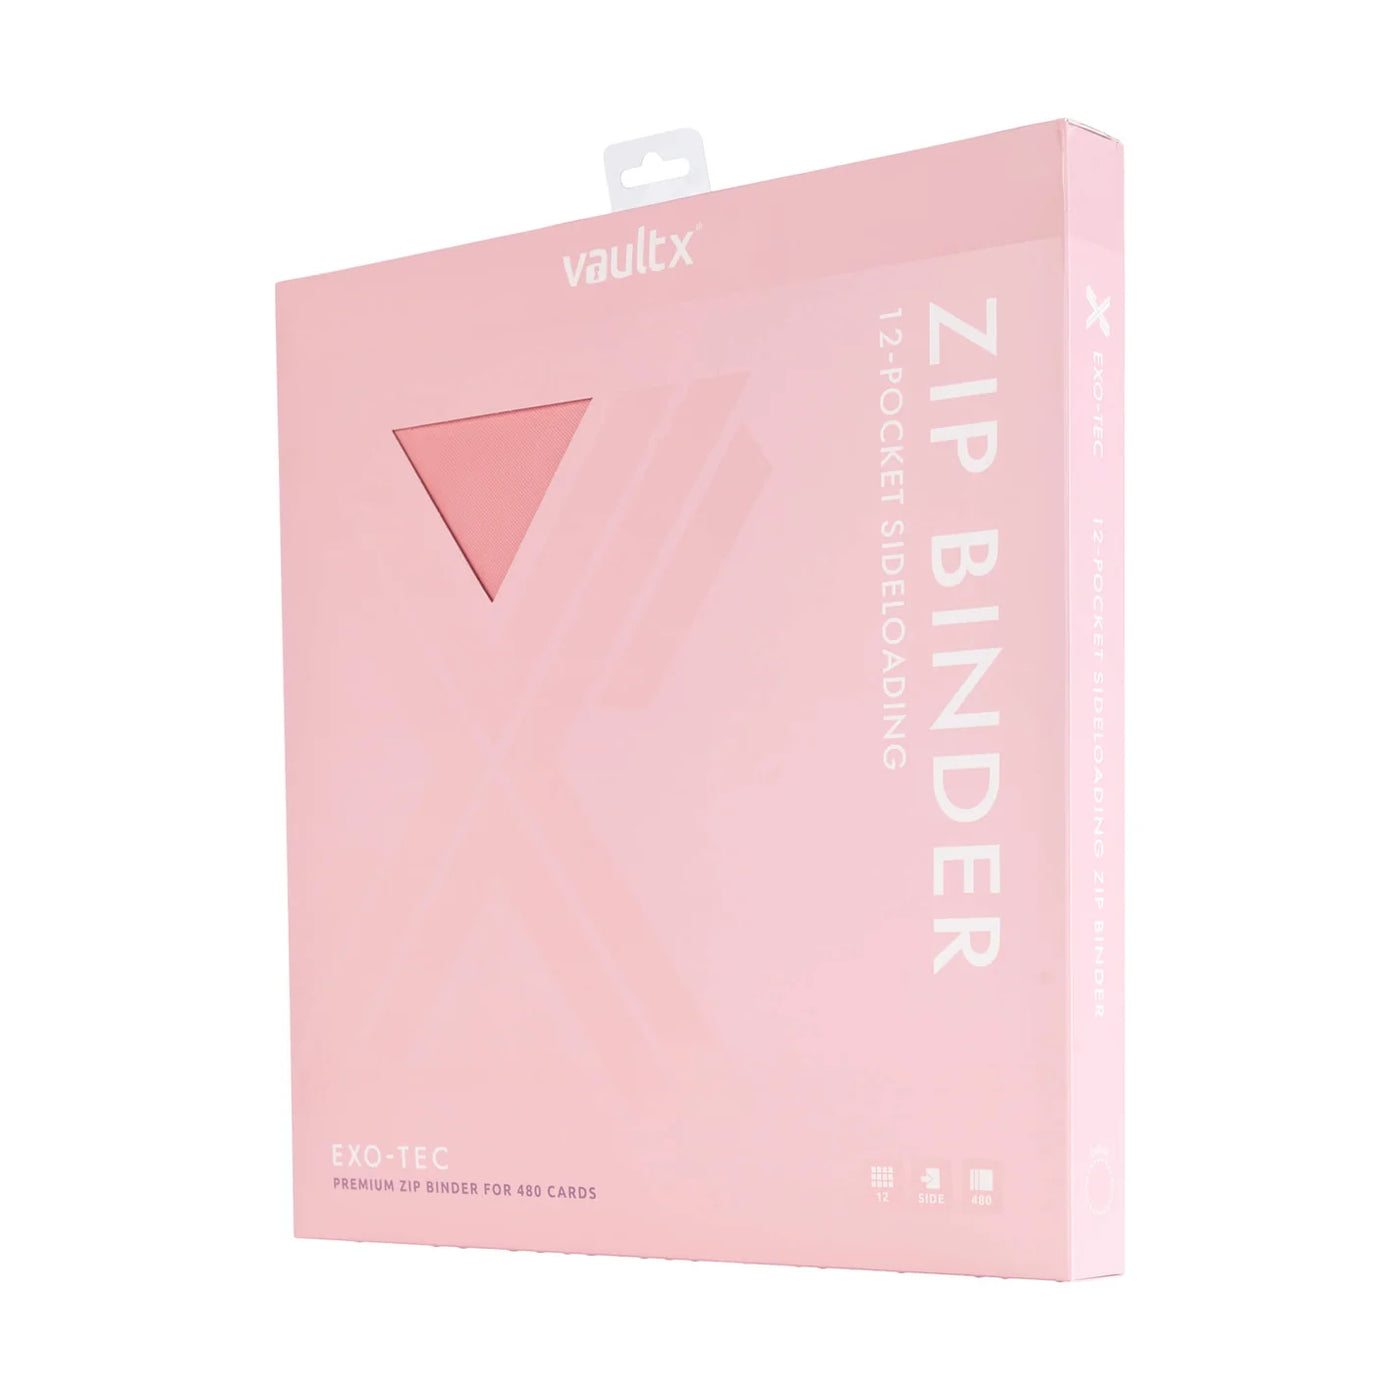 Vault X Exo-Tec Zip Binder 12-Pocket Just Pink